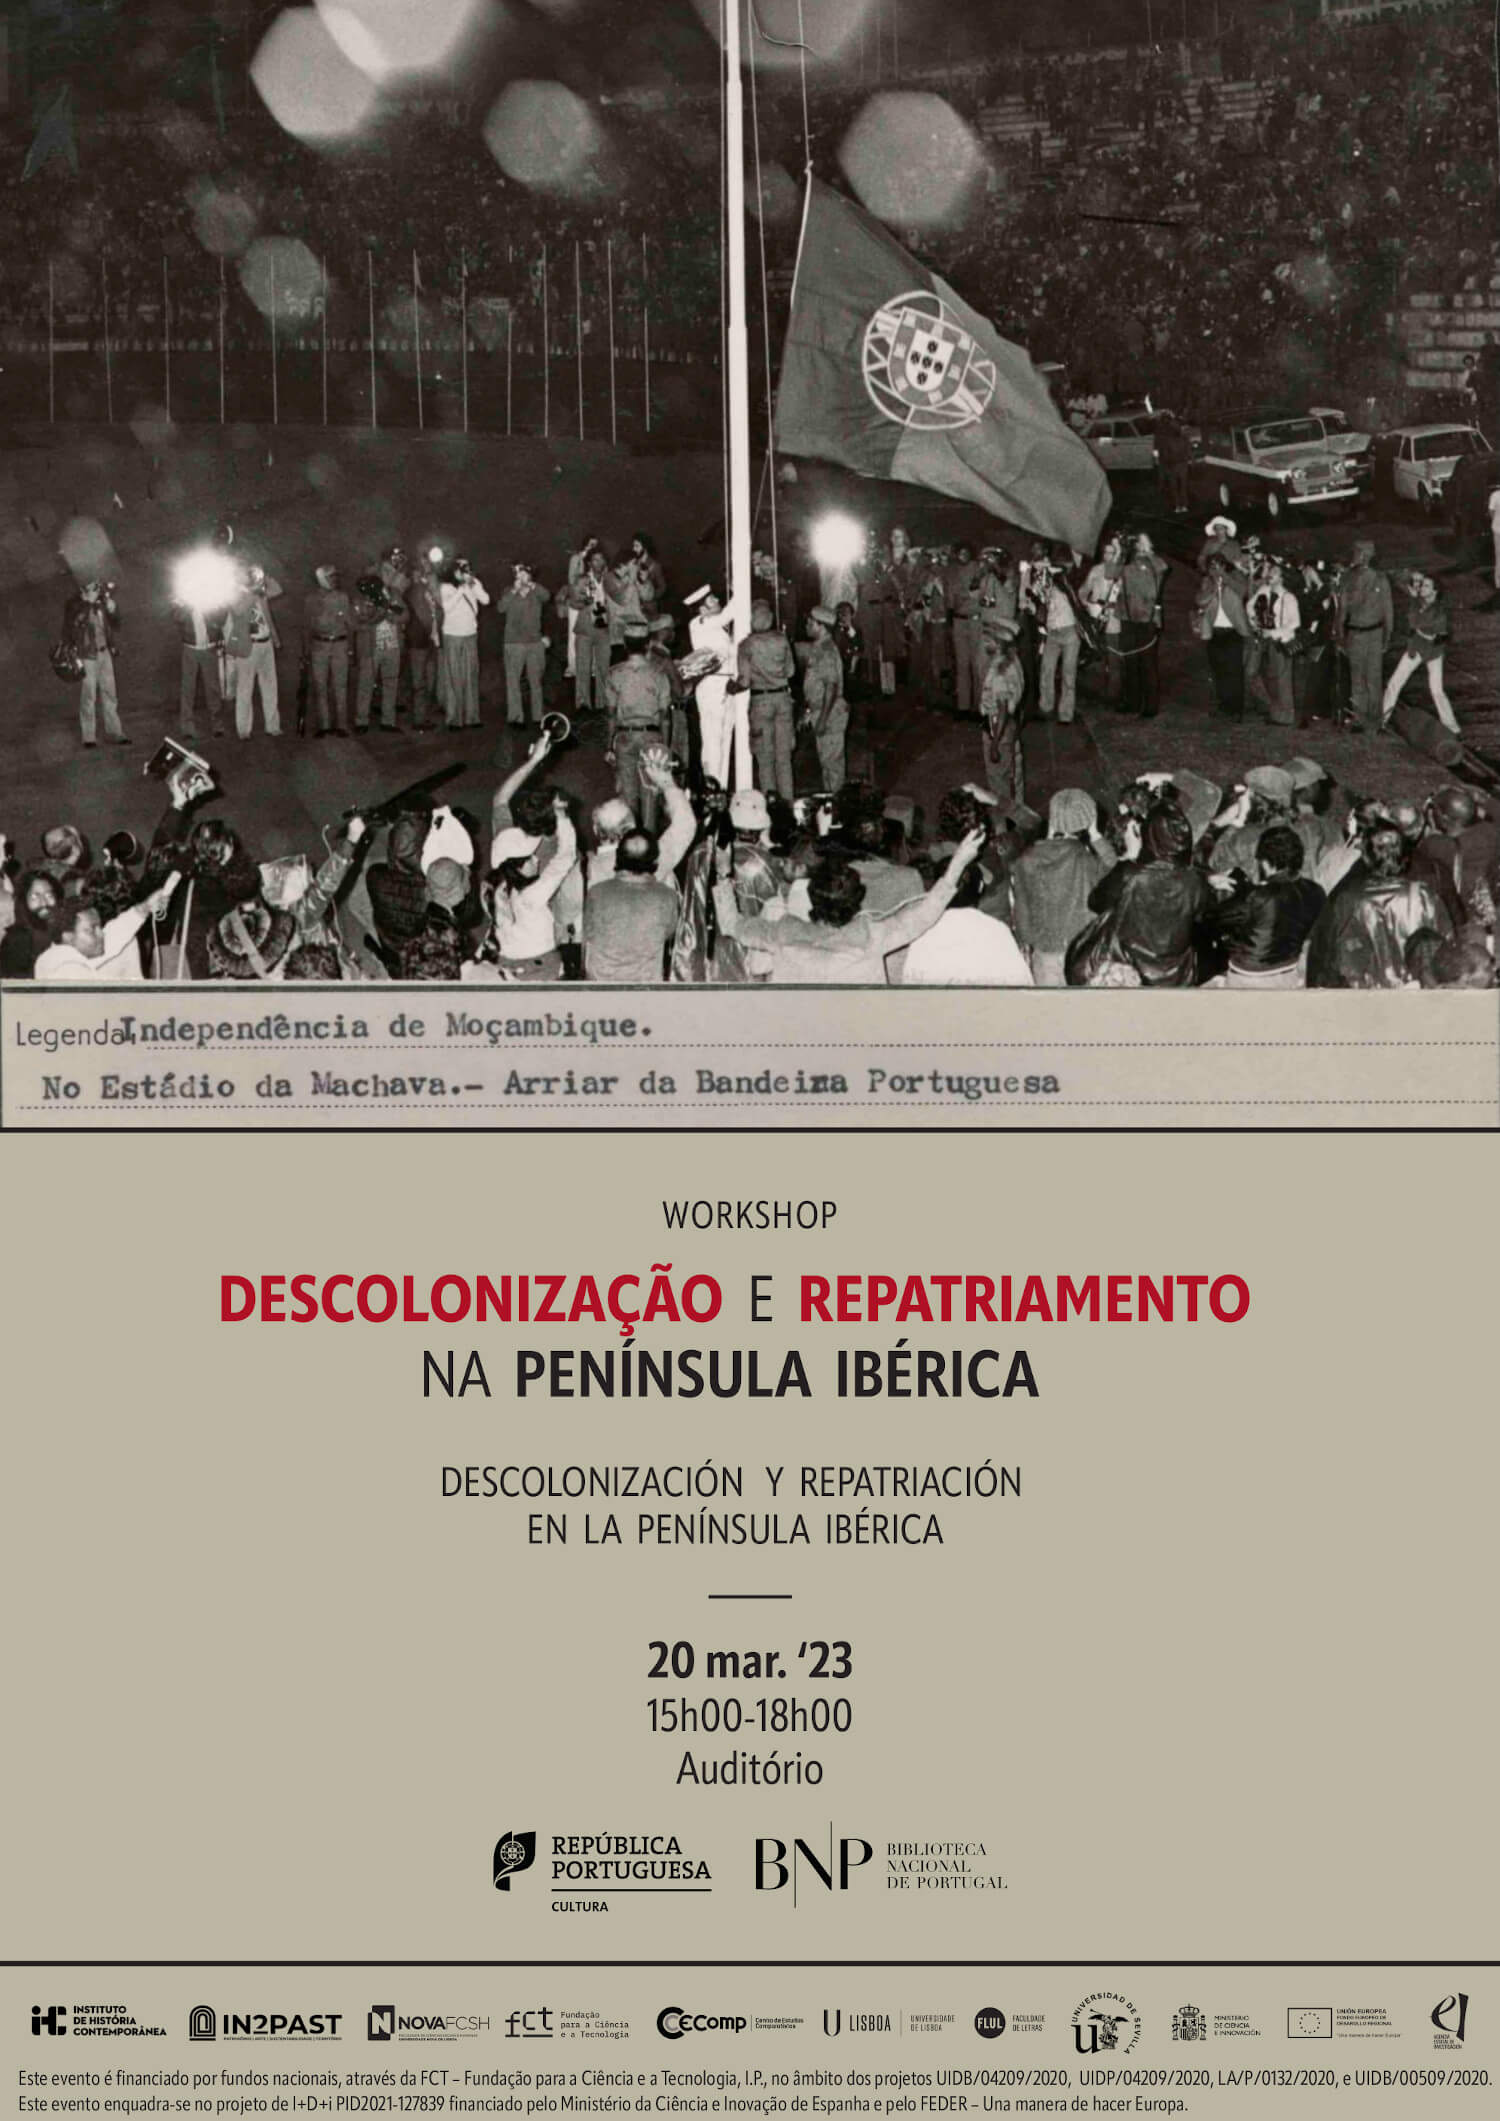 Cartaz do workshop “Descolonização e repatriamento na Península Ibérica”. 20 de Março de 2023, das 15 às 18 horas, no Auditório da Biblioteca Nacional de Portugal. Inclui uma fotografia que mostra o arriar da bandeira portuguesa a 25 de Junho de 1975, no estádio da Machava, marcando a independência de Moçambique.